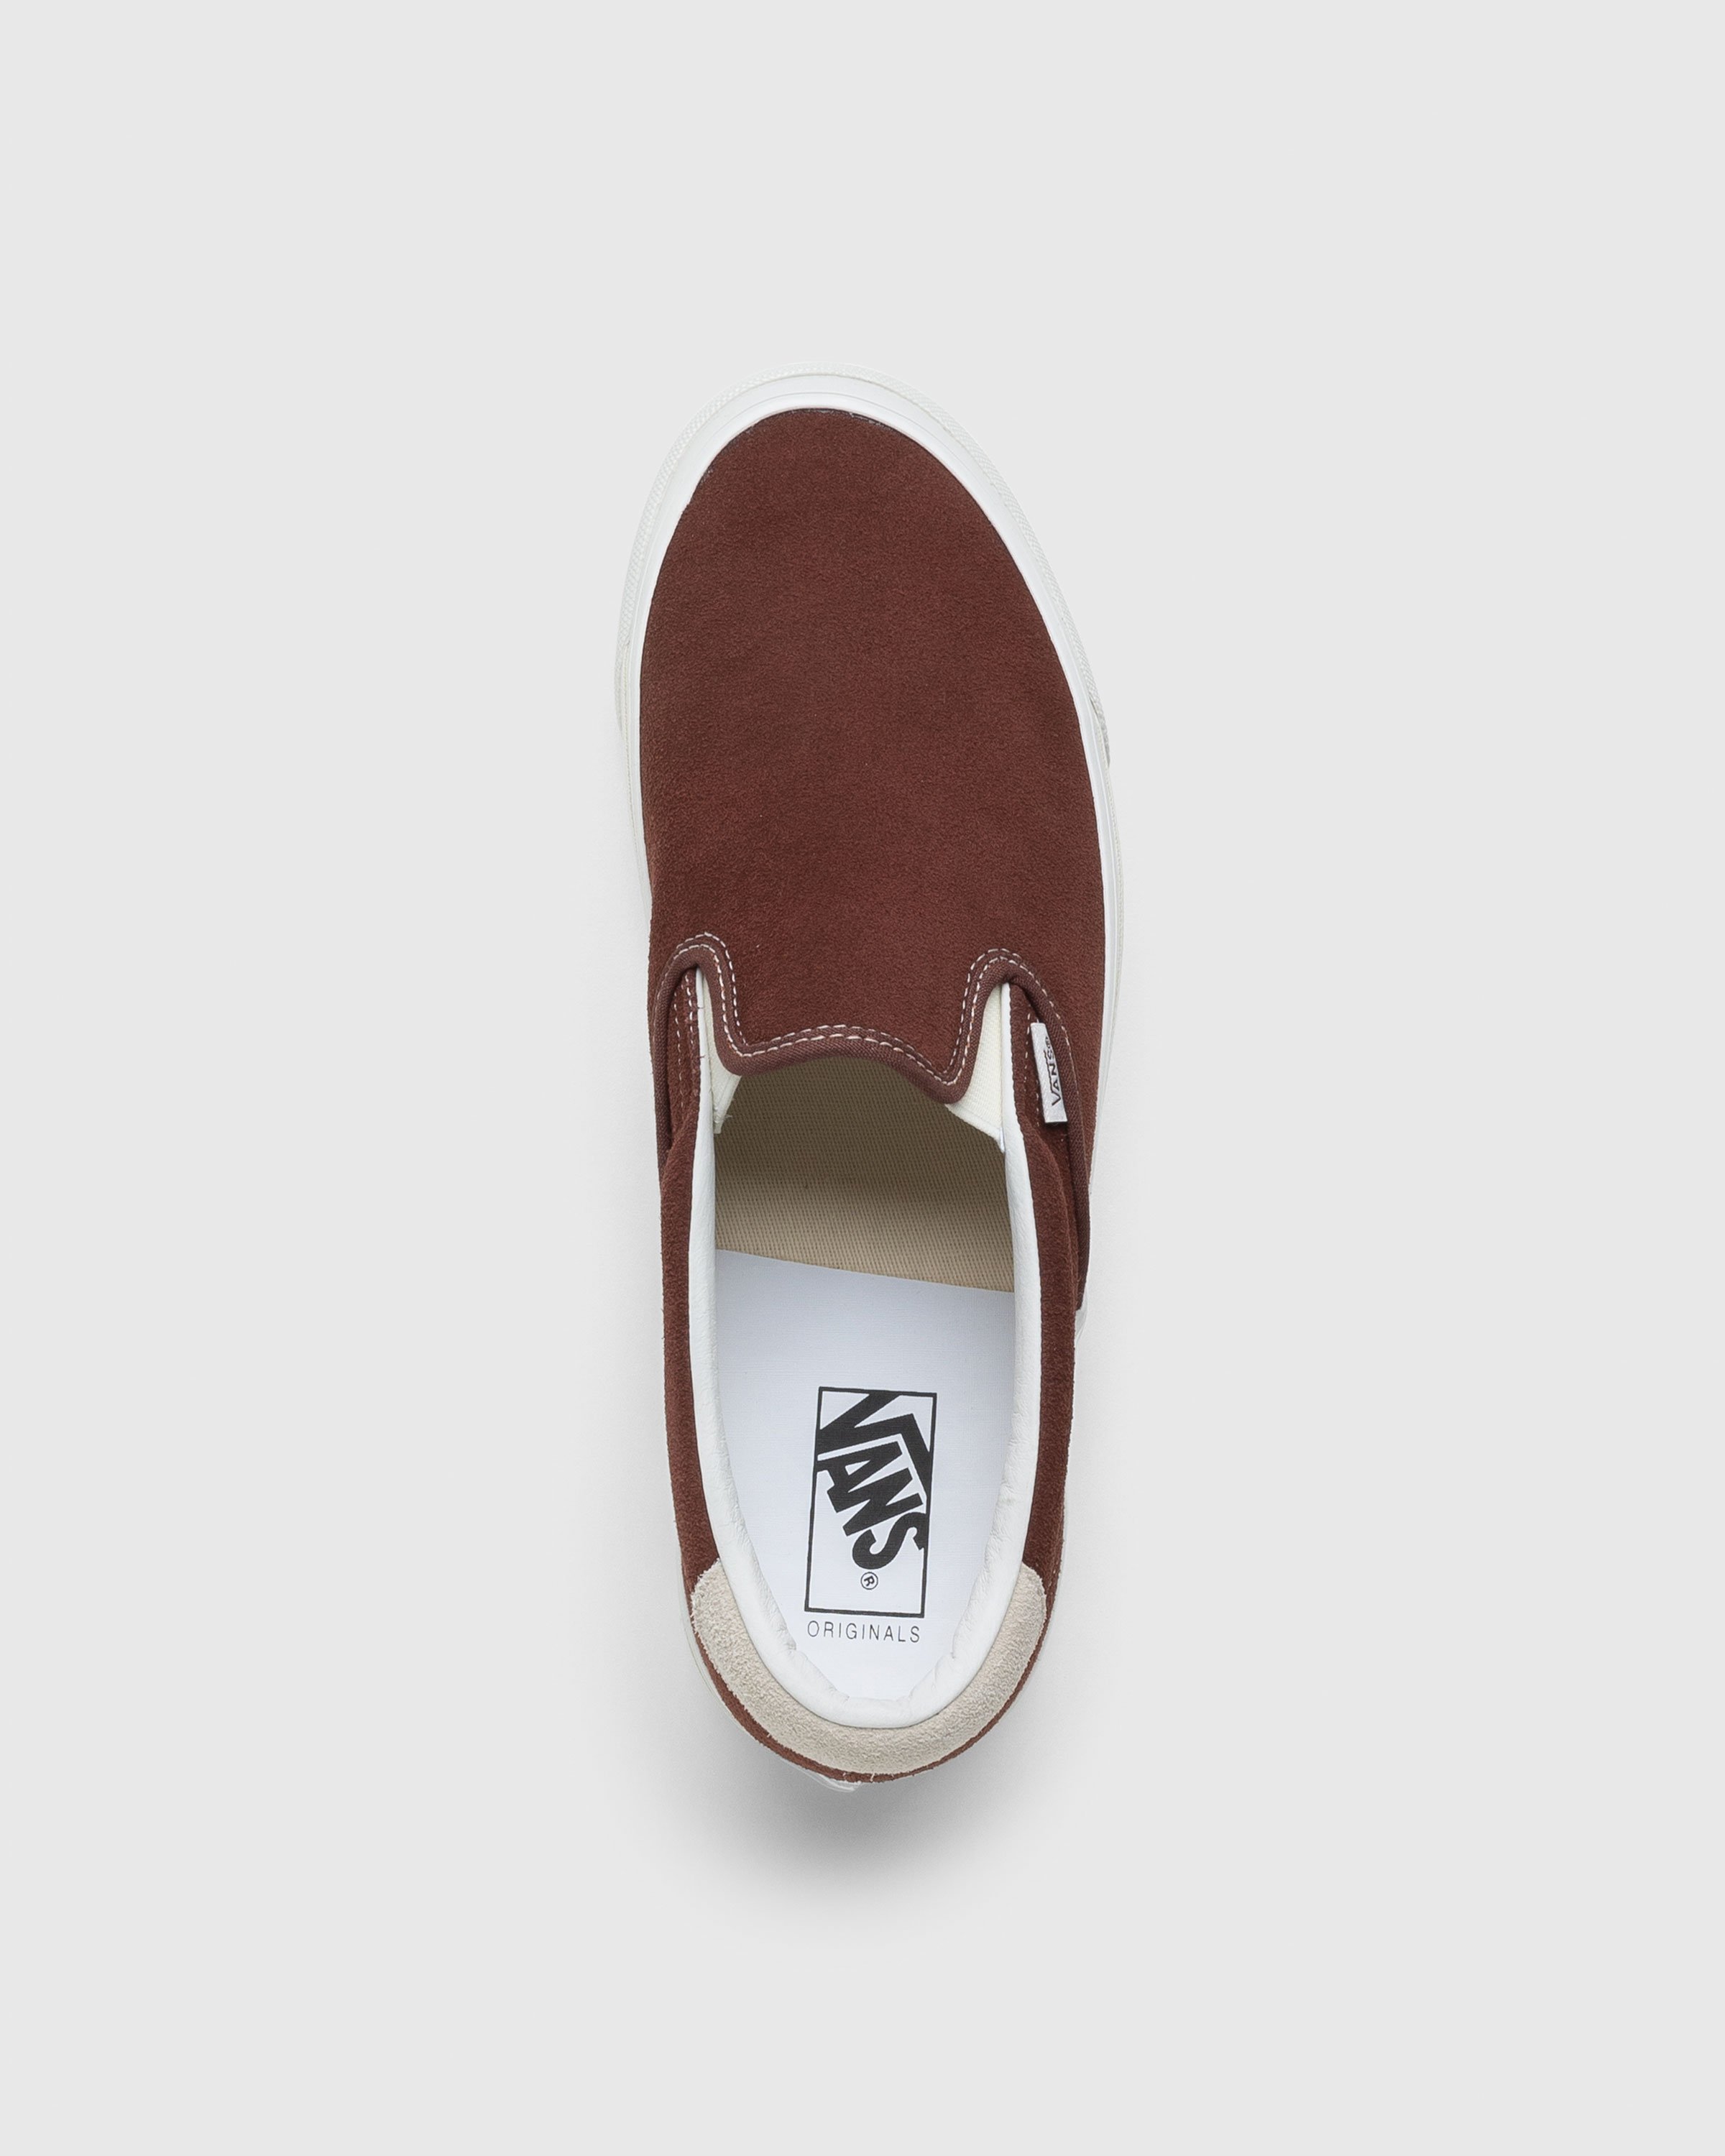 Vans - OG Slip-On 59 LX Suede Brown - Footwear - Brown - Image 5